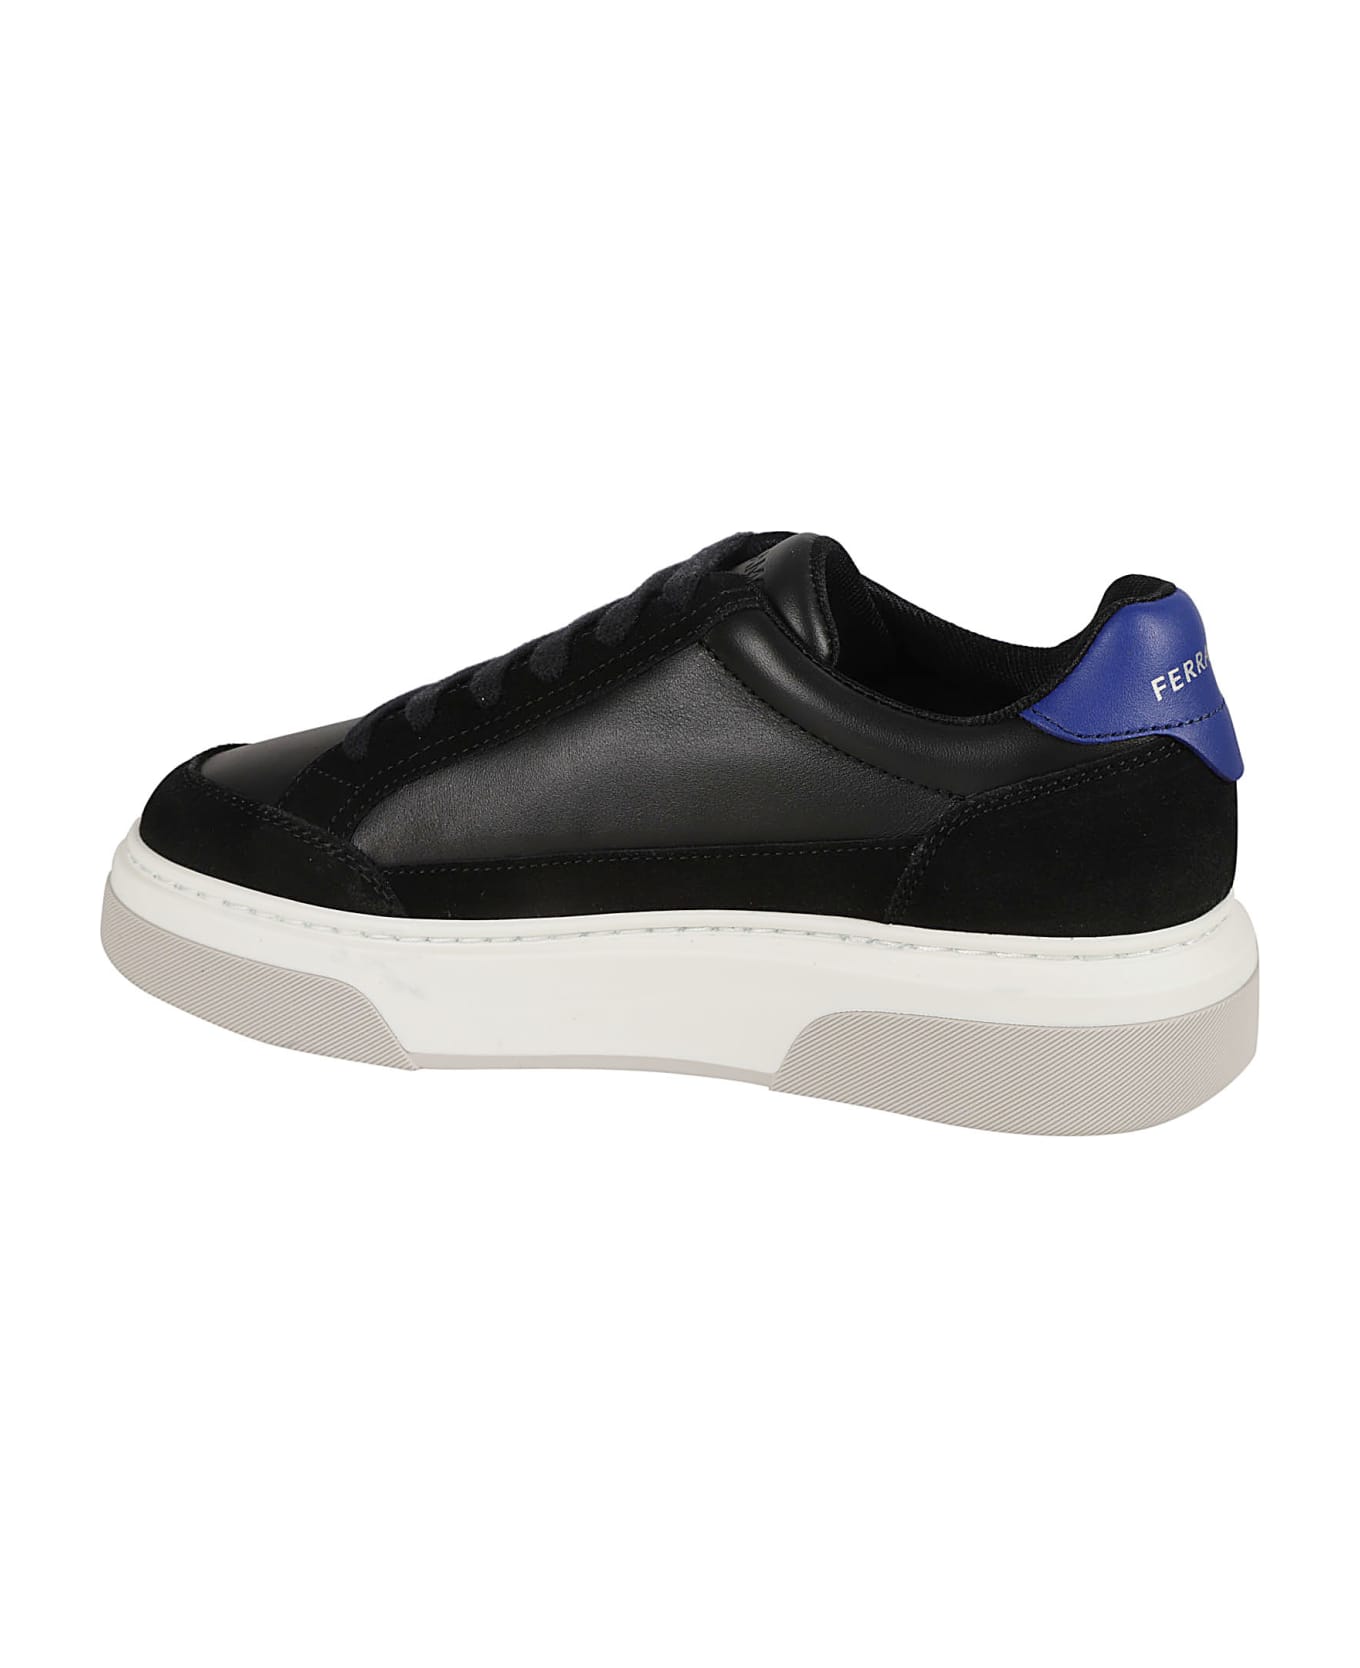 Ferragamo 'cassina' Black Leather Blend Sneakers - Black スニーカー